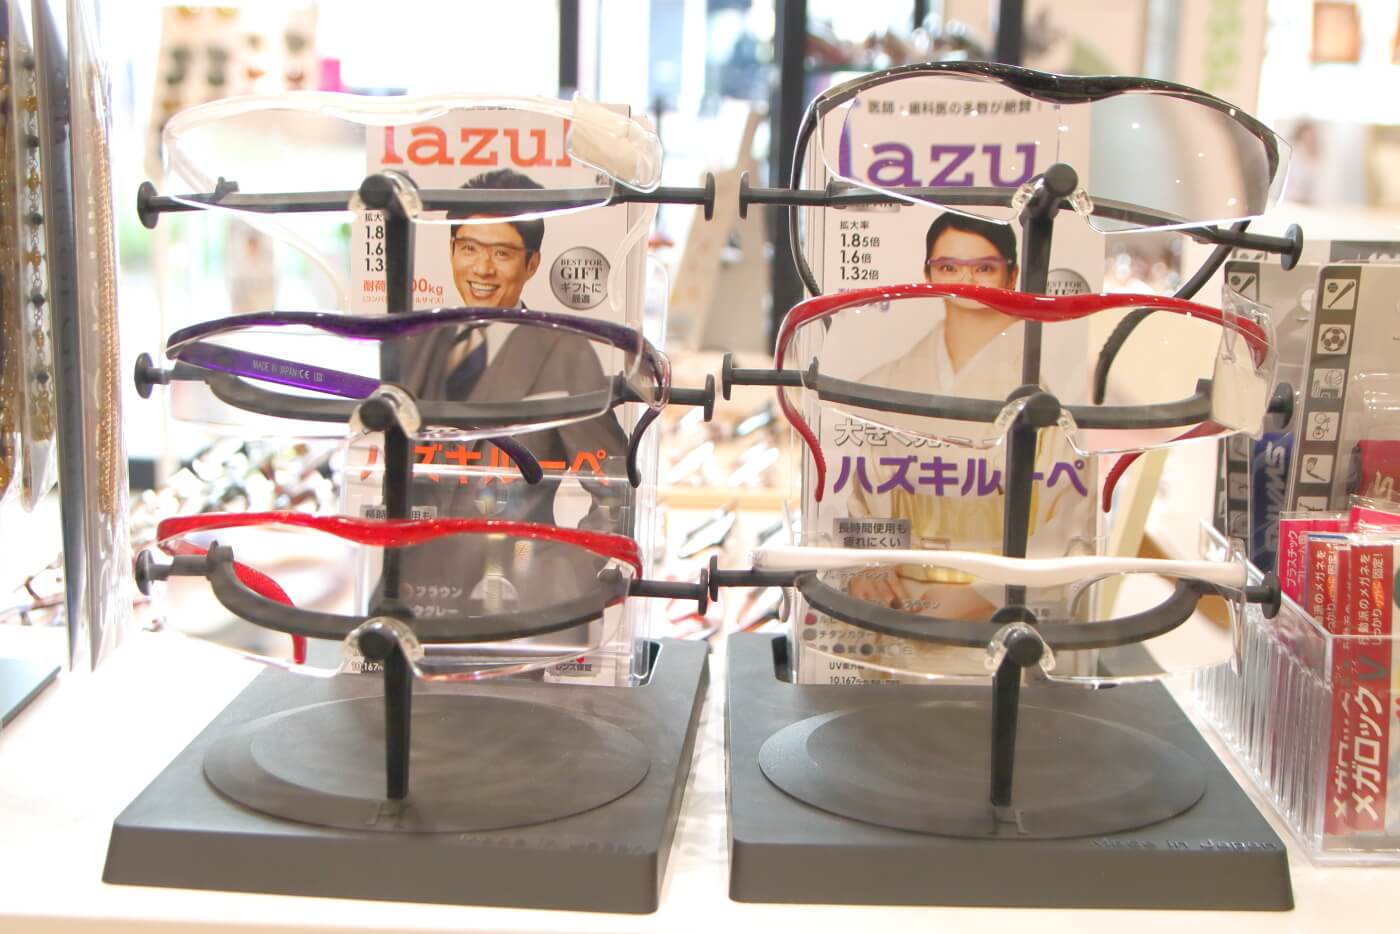 高知市上町の眼鏡店ミナミメガネの店内に陳列されたハズキルーペ